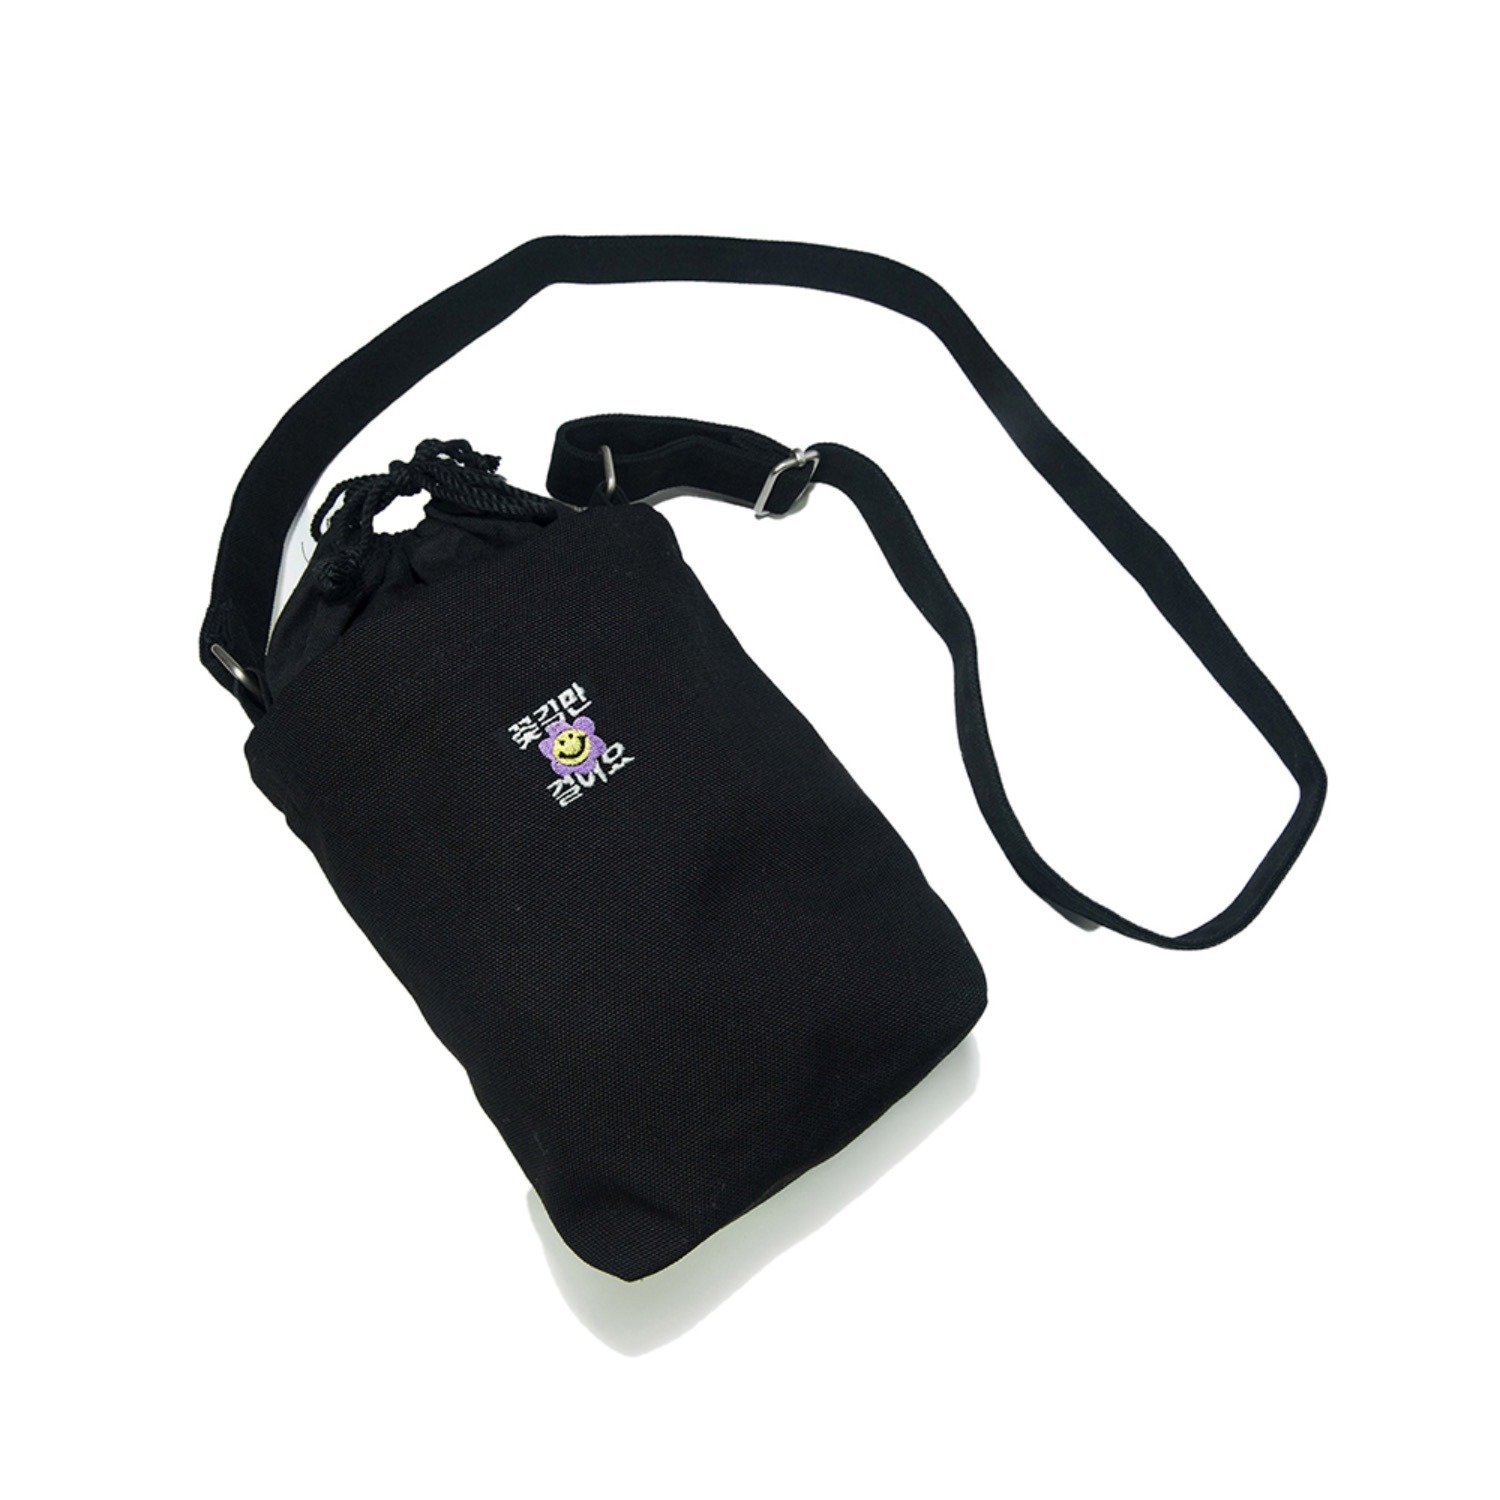 꽃길 스몰 캔버스 숄더백 블랙Flower small canvas shoulder bag (Black)